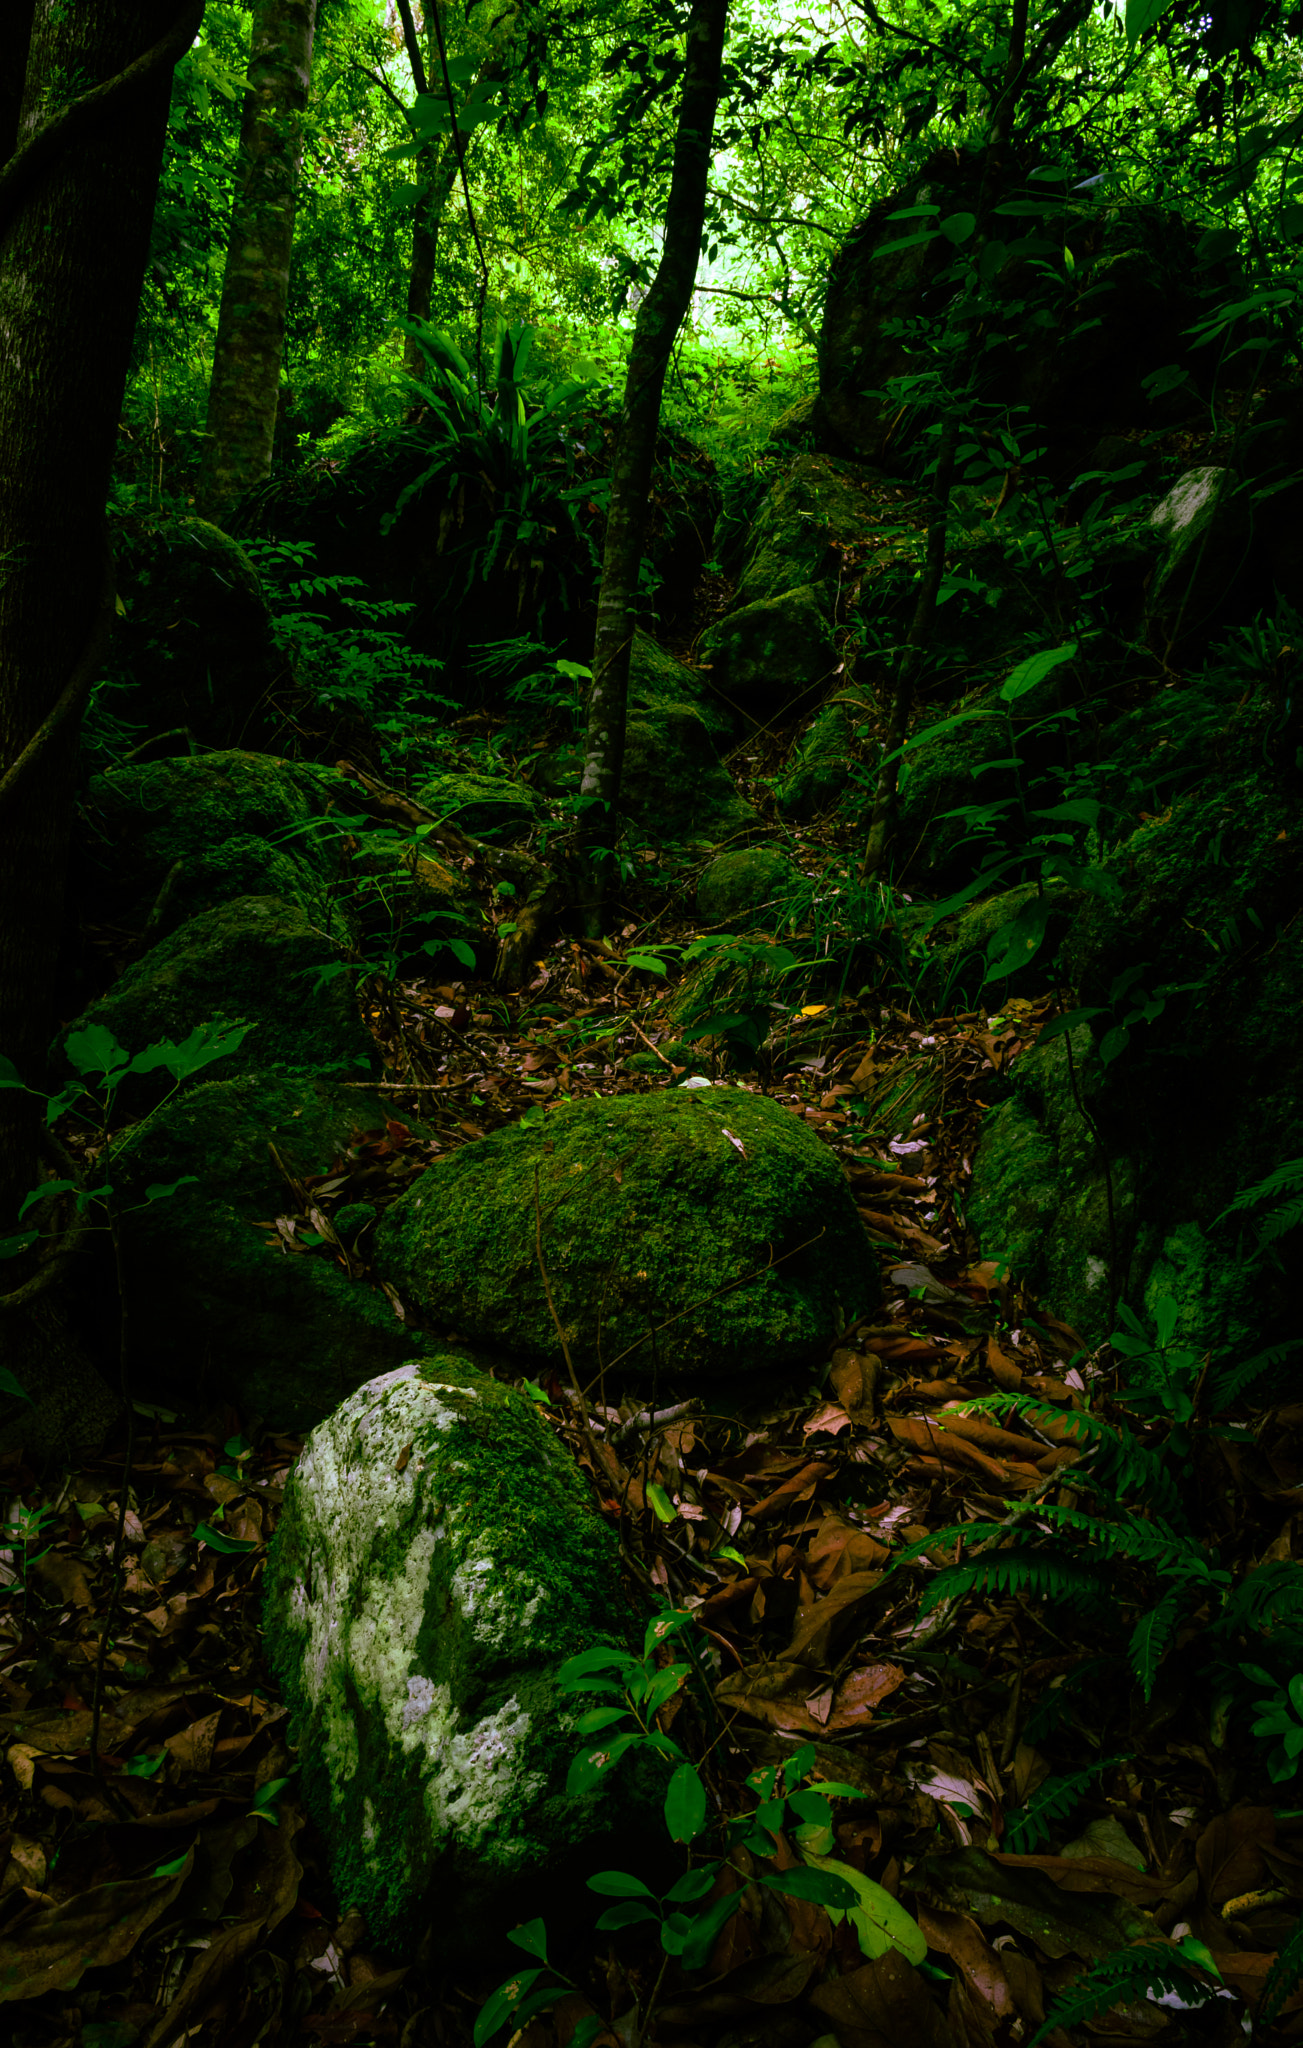 Nikon D5200 + Nikon AF-S DX Nikkor 17-55mm F2.8G ED-IF sample photo. Rainforest garden photography